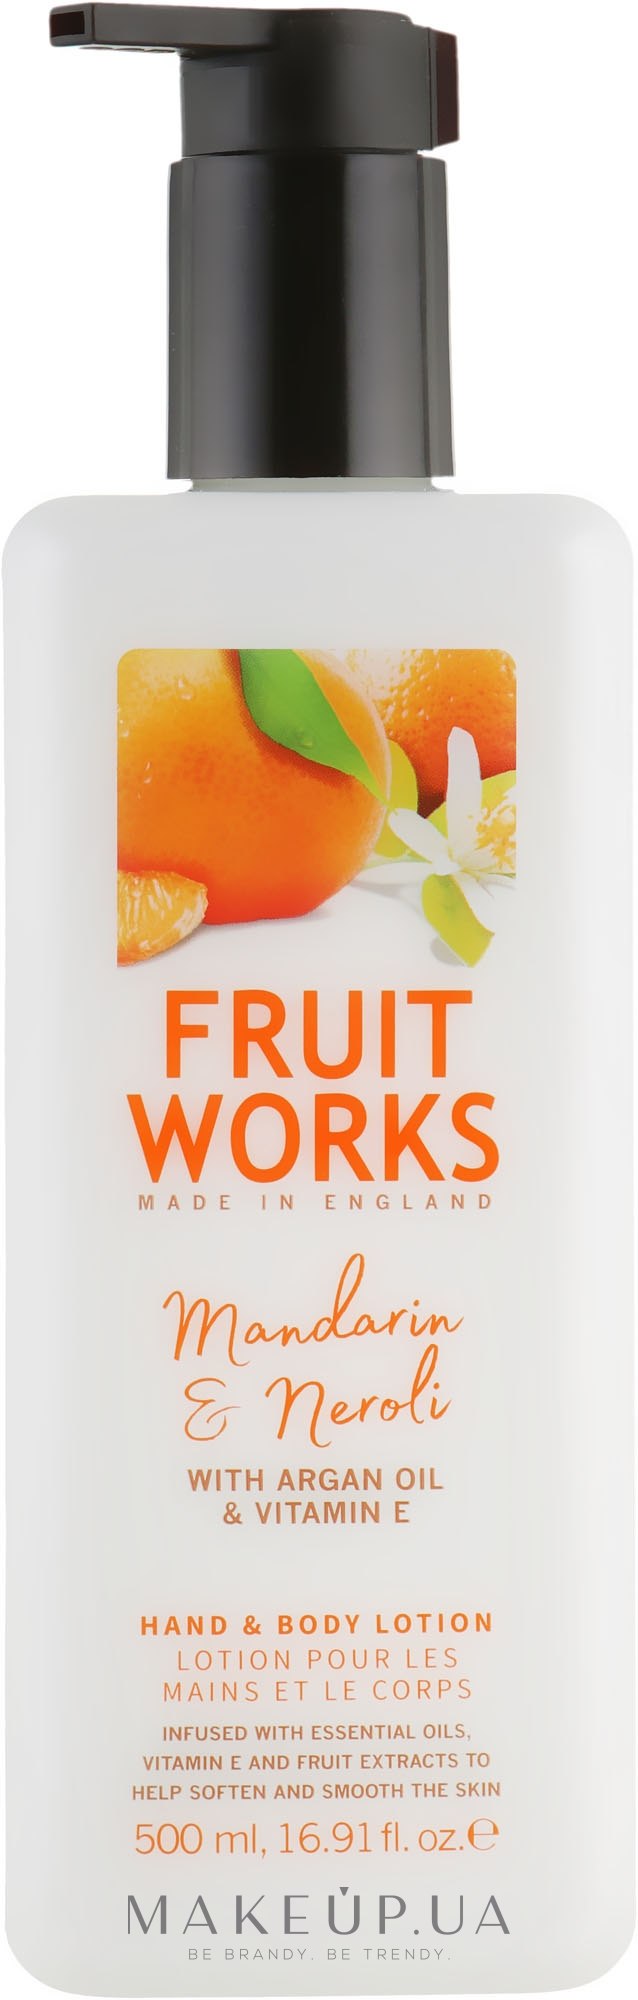 Лосьйон для рук і тіла "Кокос і лайм" - Grace Cole Fruit Works Hand & Body Lotion Mandarin & Neroli — фото 500ml